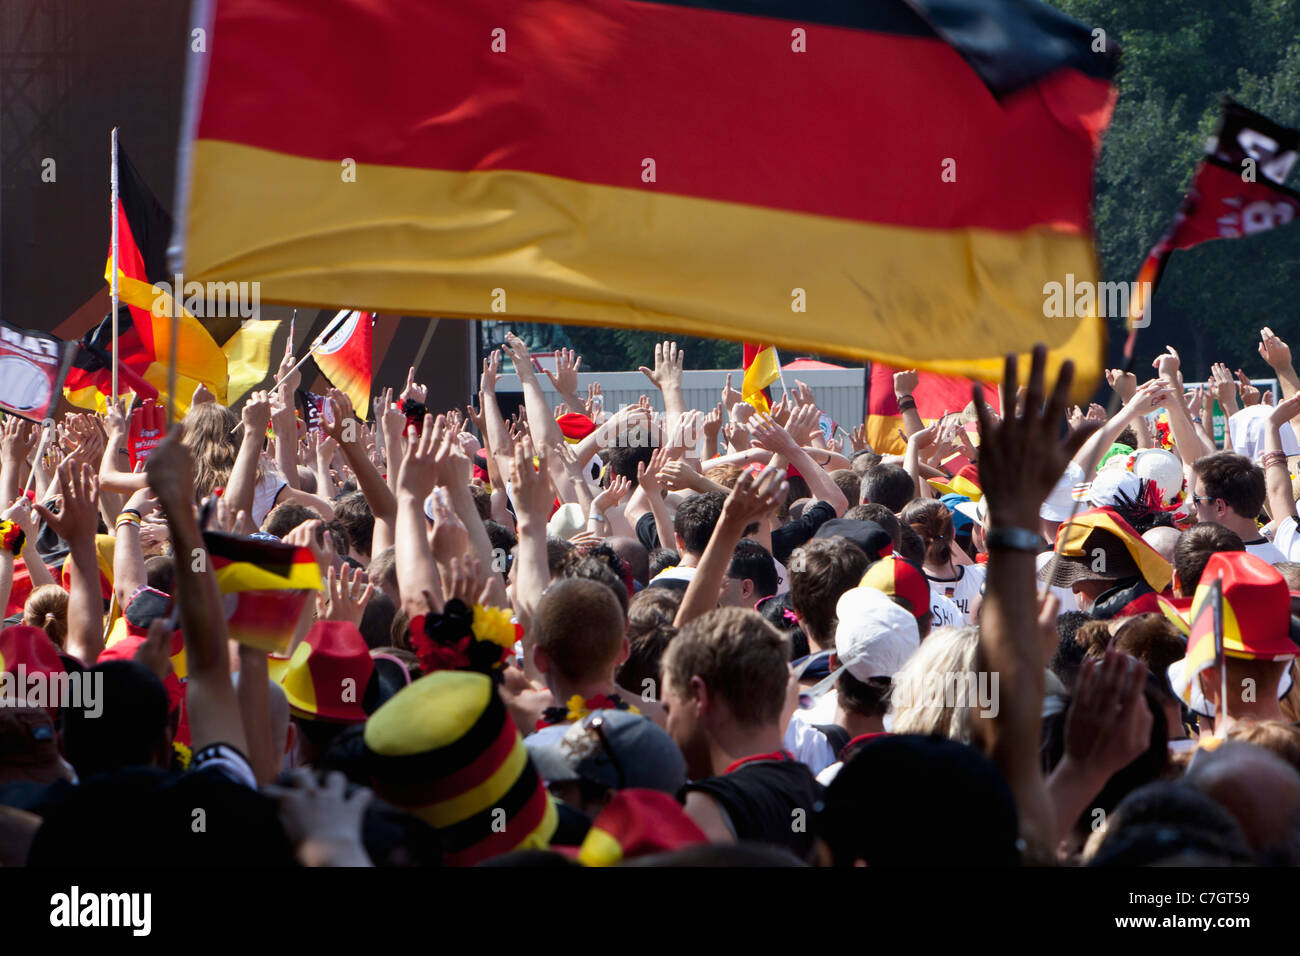 Dettaglio delle persone in una folla che acclamava e sventolando bandiere tedesco Foto Stock